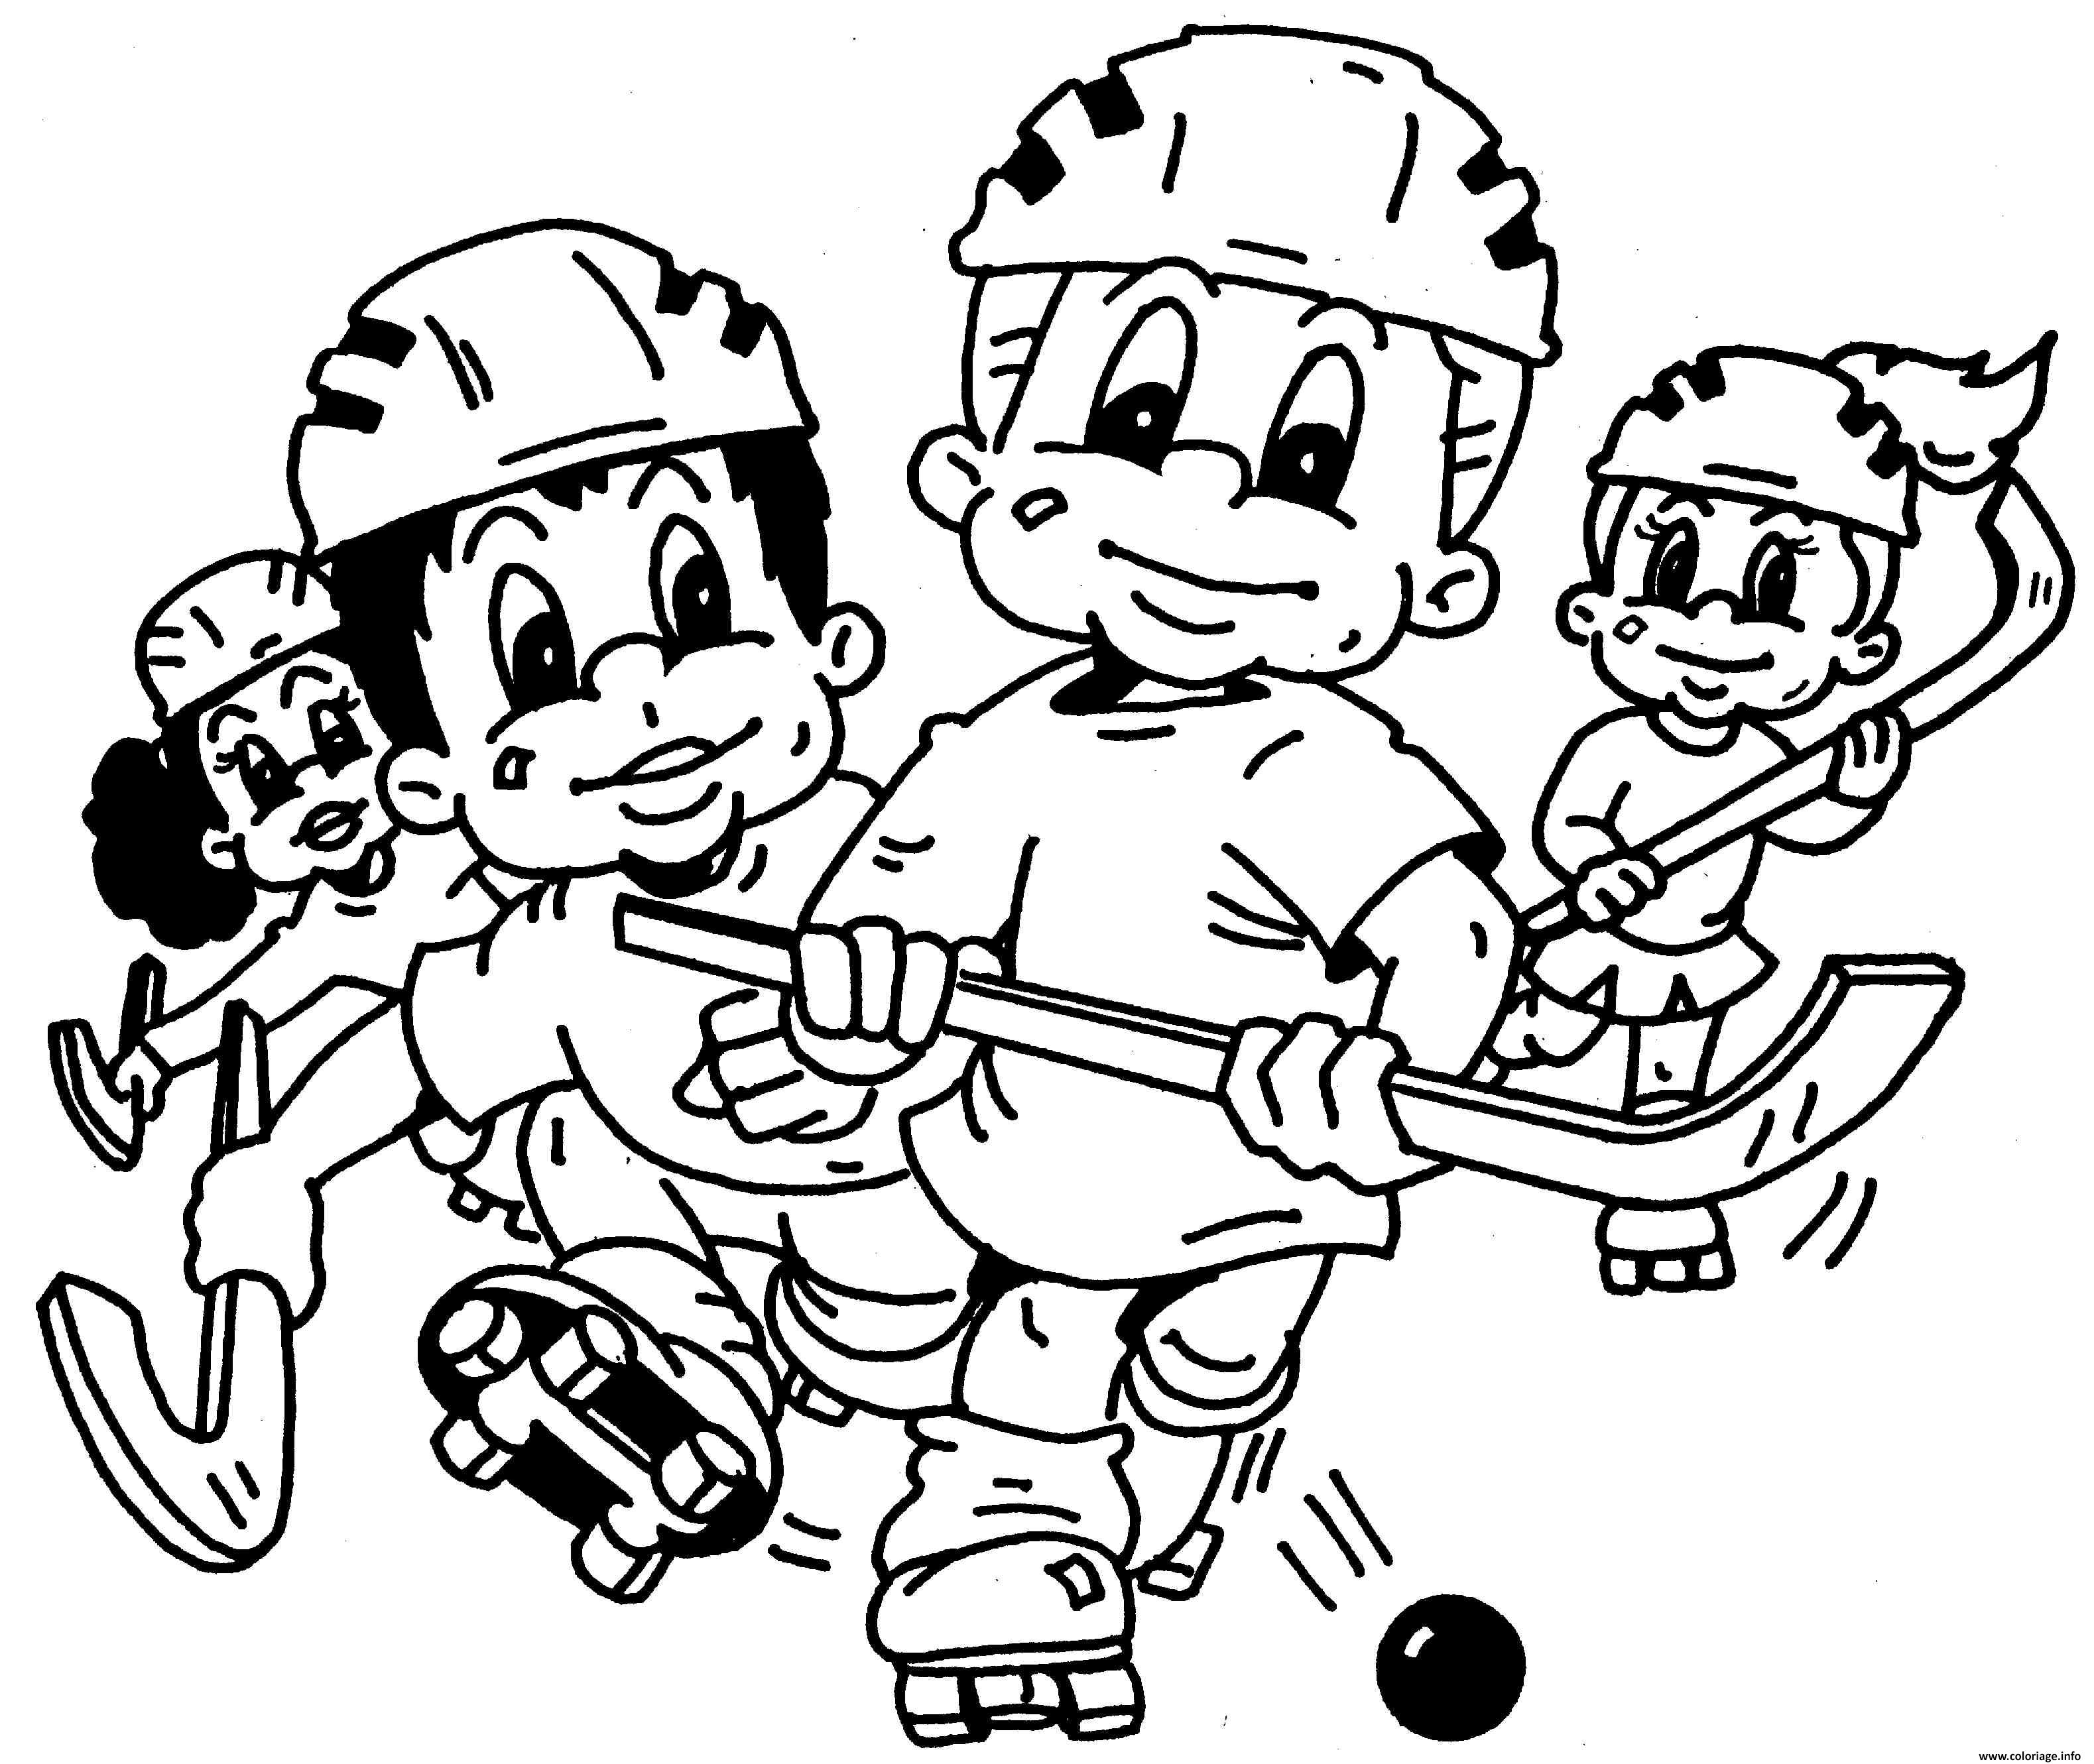 Coloriage Dessin De Hockey Enfants Fille Et Garcon Dessin à Imprimer